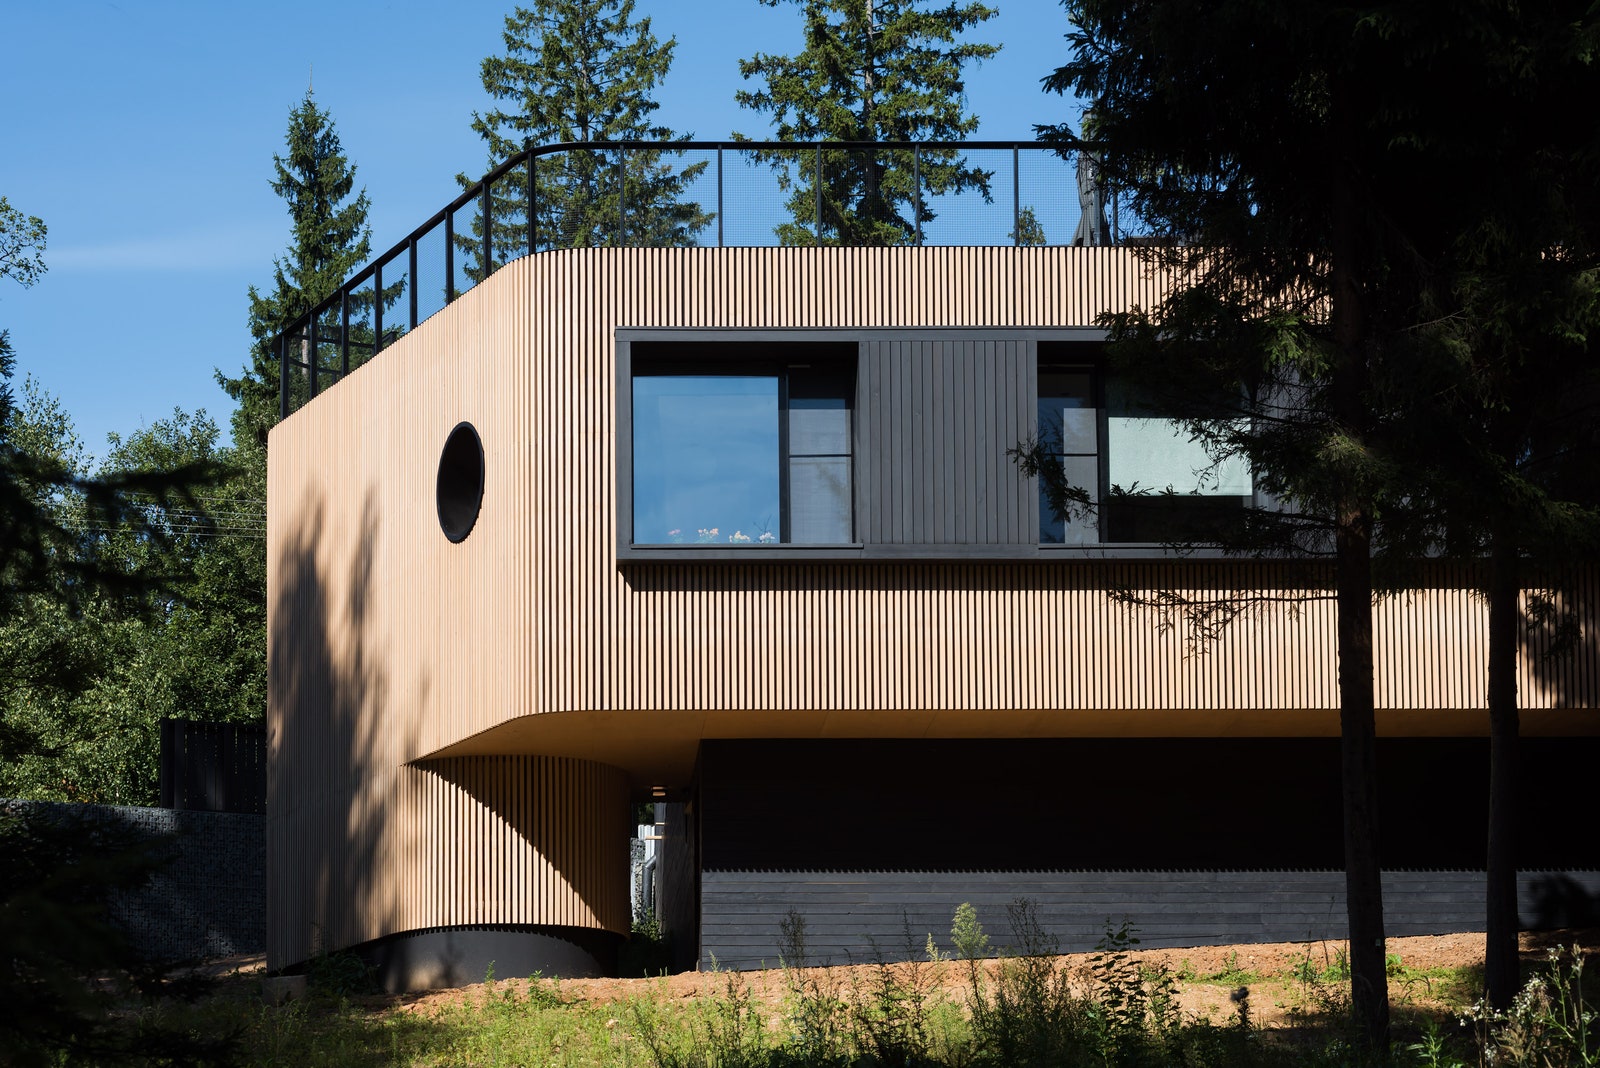 Дом построен по технологии МХМ — из досок сбитых алюминиевыми гвоздями в большие панели.